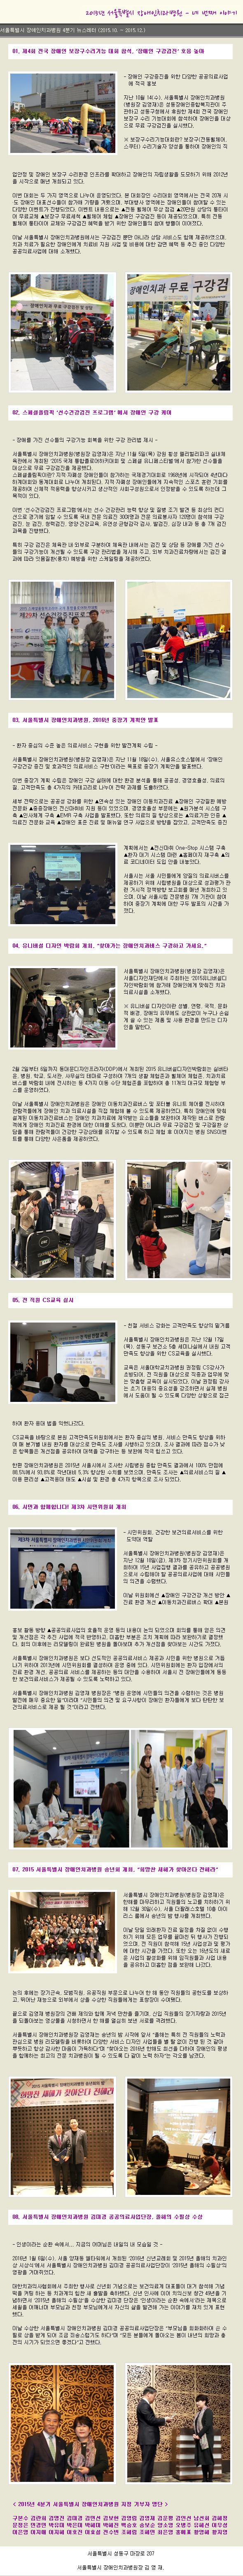 2015 서울특별시 장애인치과병원 제4호 뉴스레터